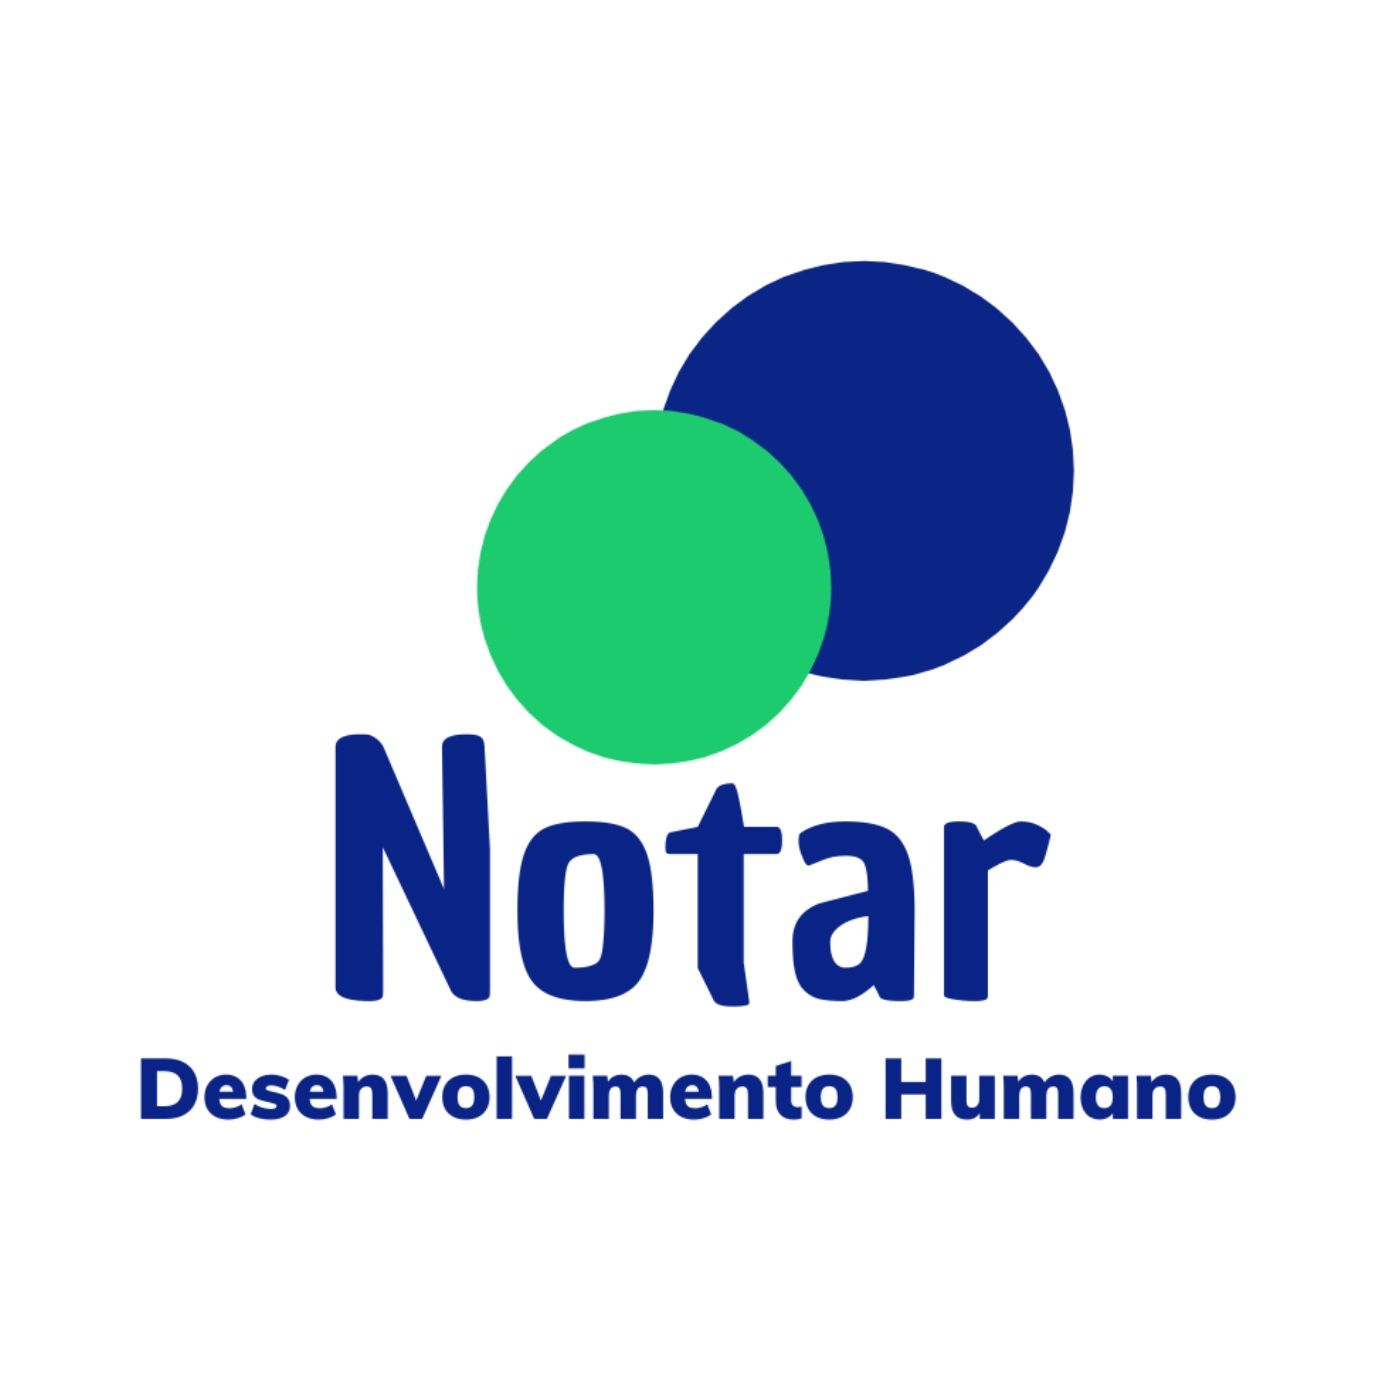 Notar - Desenvolvimento Humano